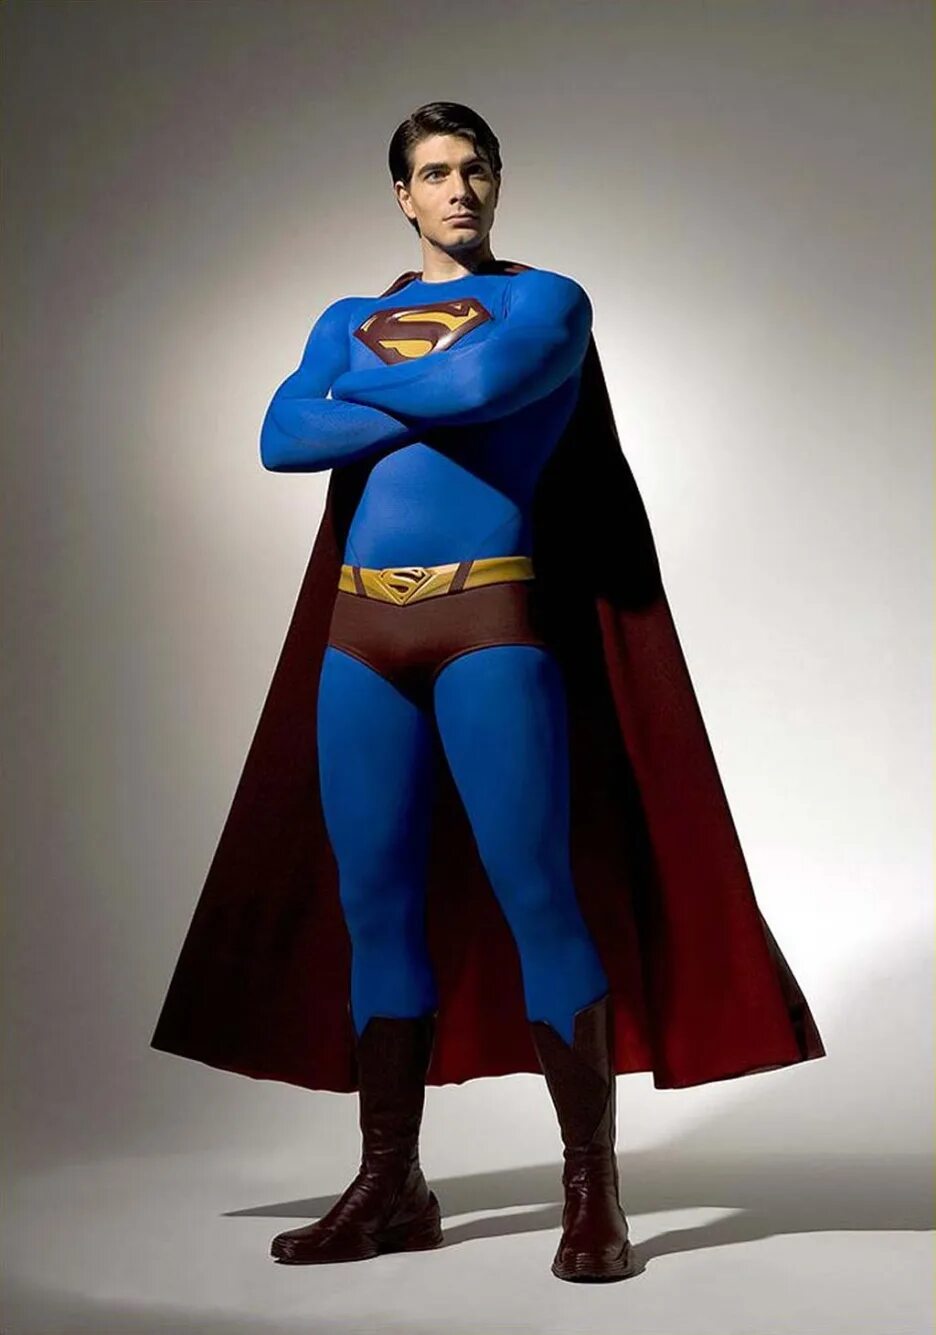 Brandon Routh Супермен. Возвращение Супермена Брэндон рут. Брэндон рут Супермен 2006. Супермен Возвращение 2017. Мен v